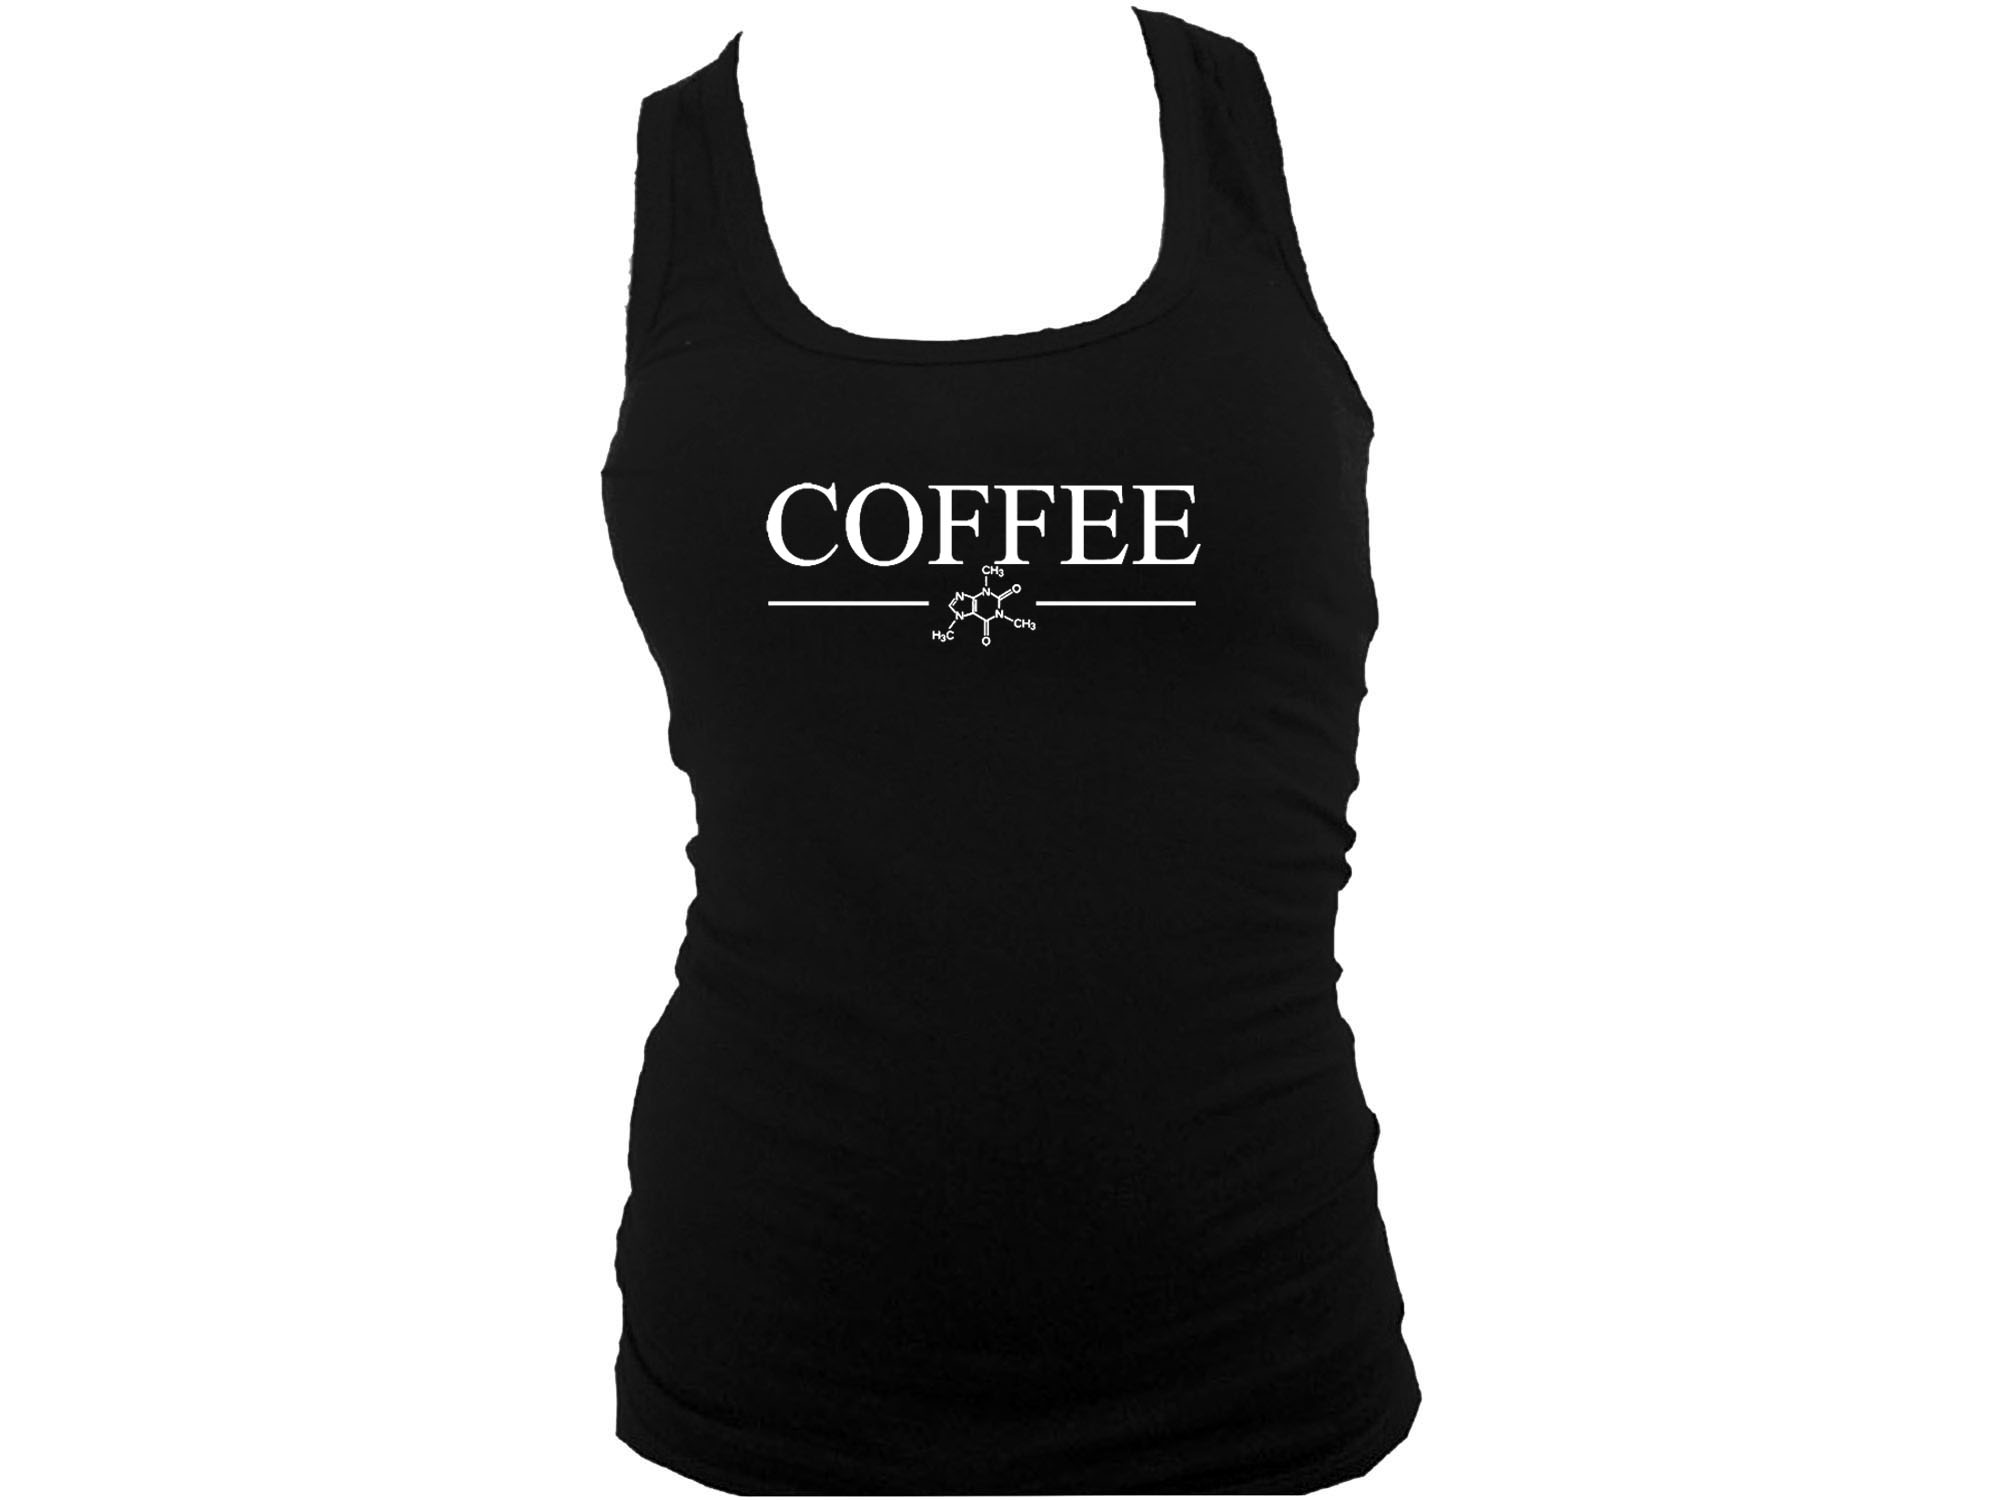 Caffeine coffee gift molecule women black tank top S/M 2